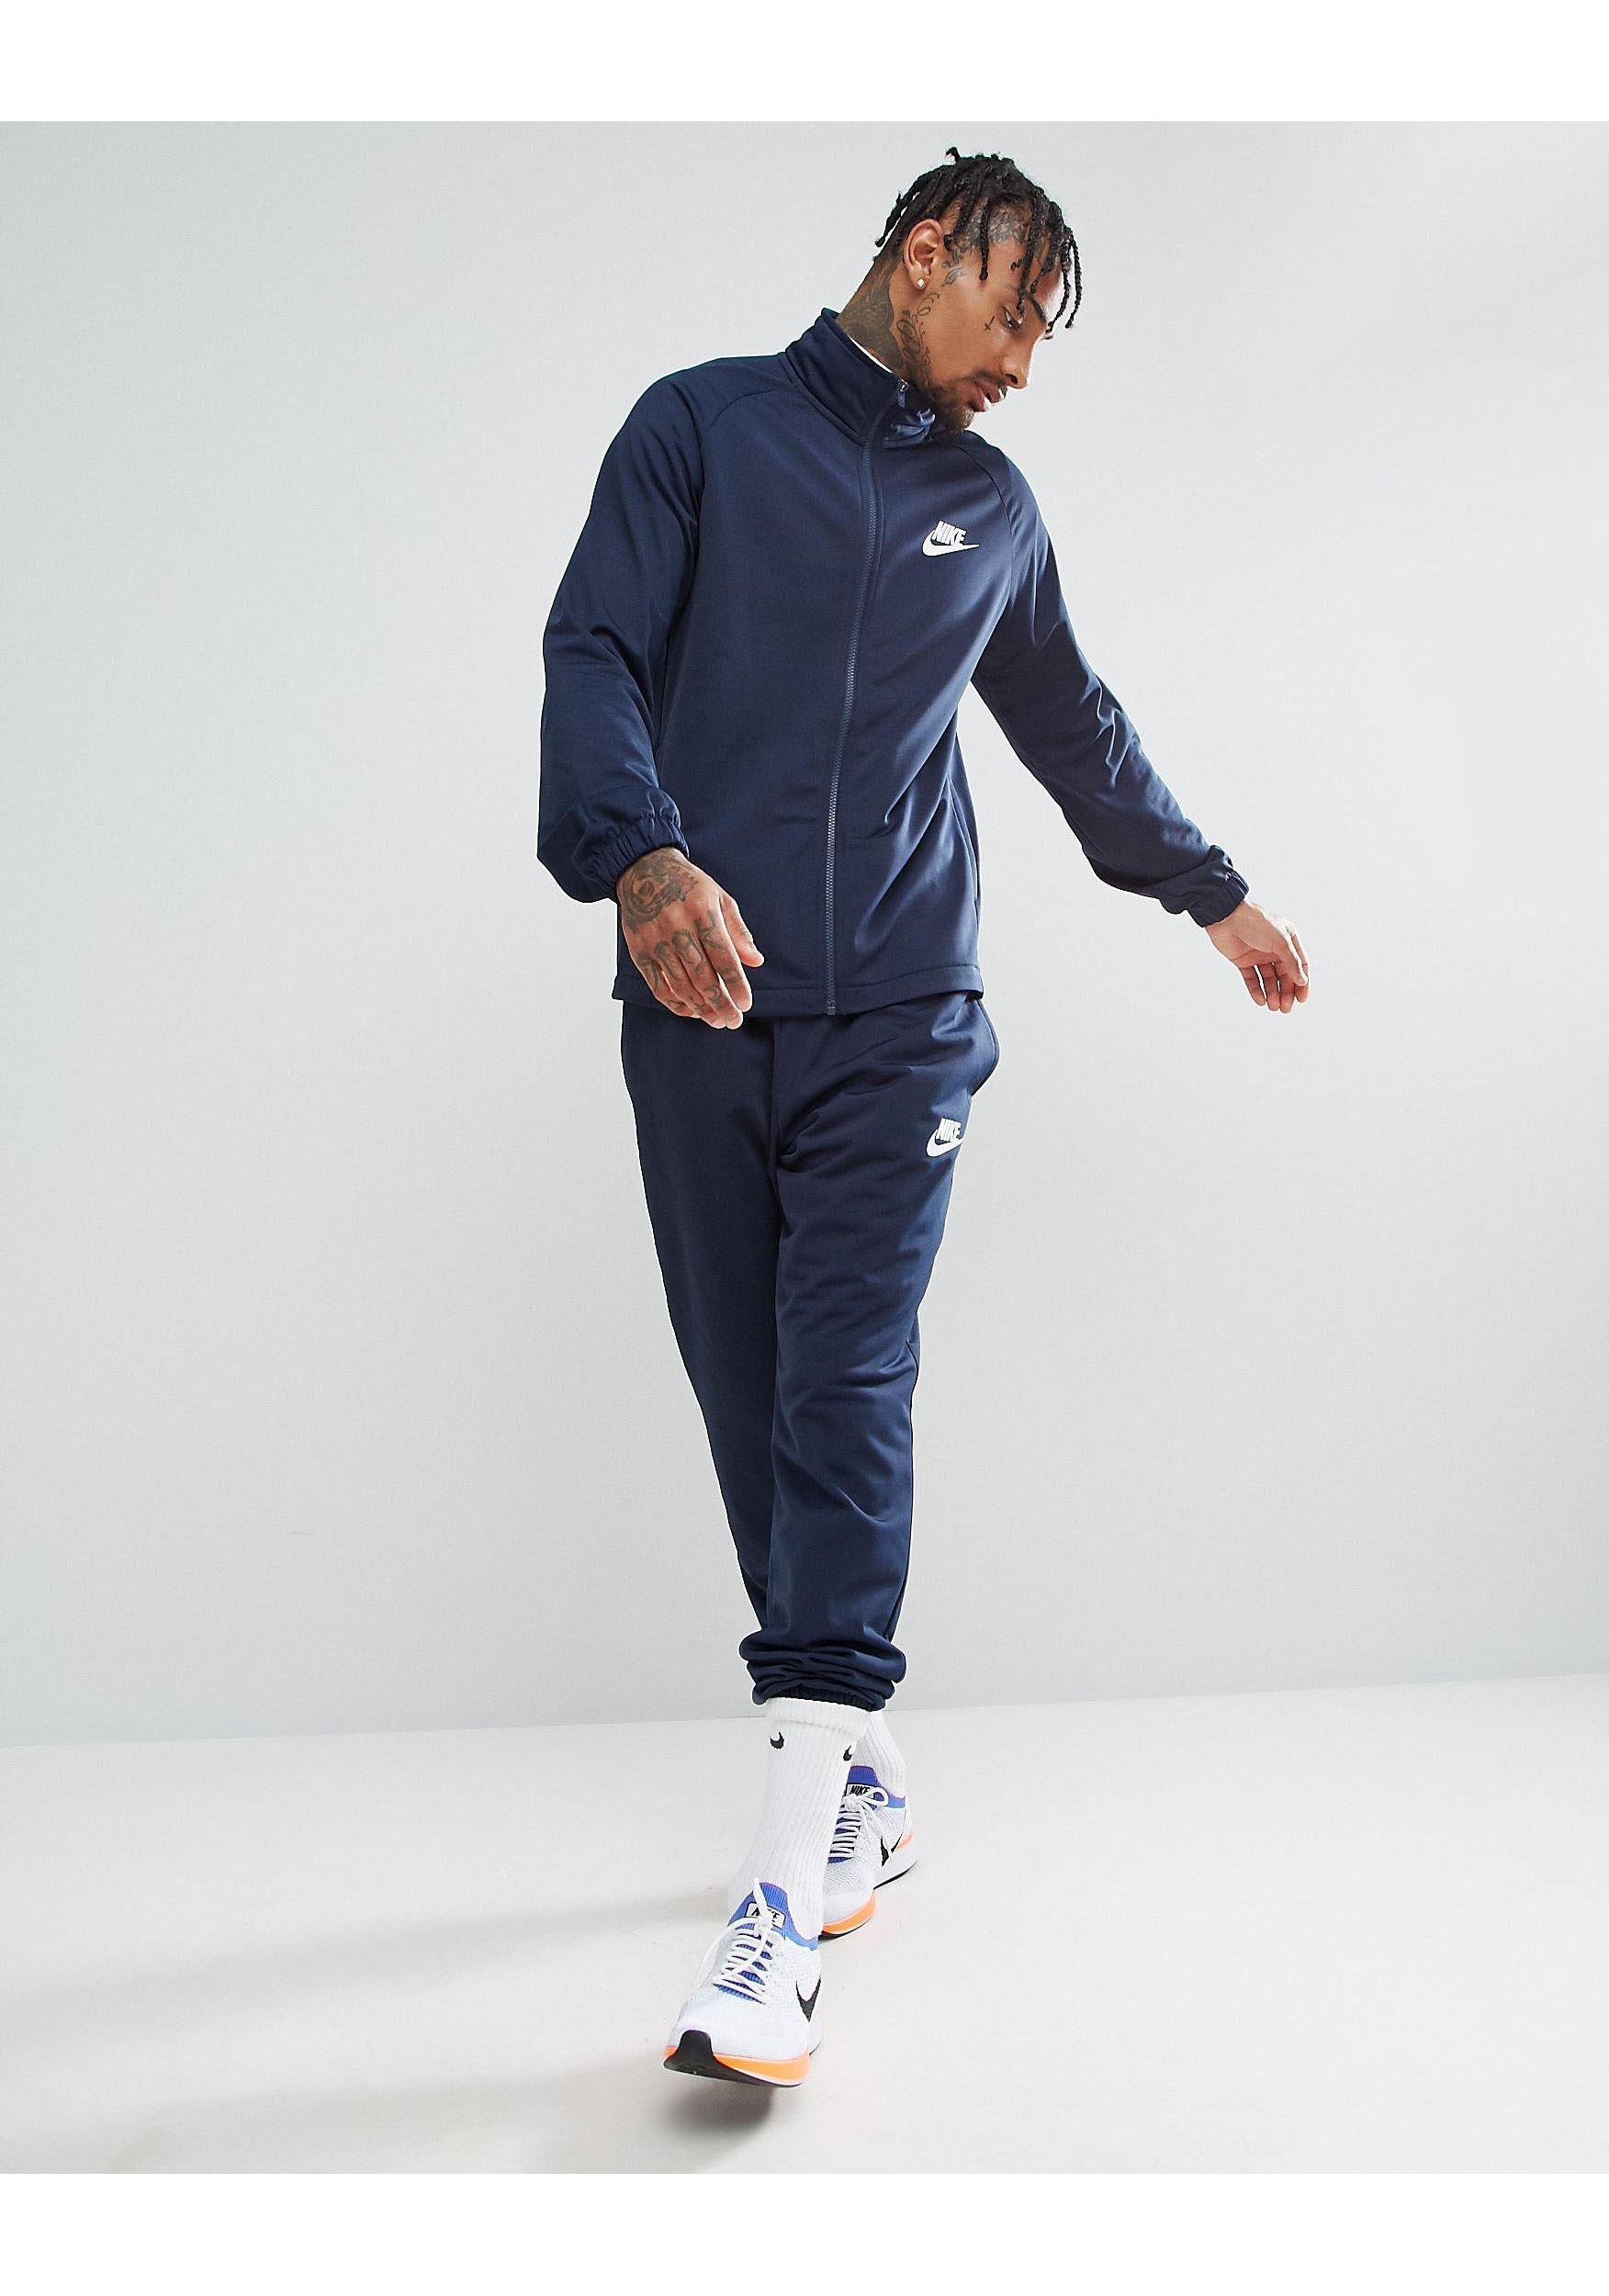 Survet Nike Polyester Factory Sale, SAVE 31% - ximenawalker.com